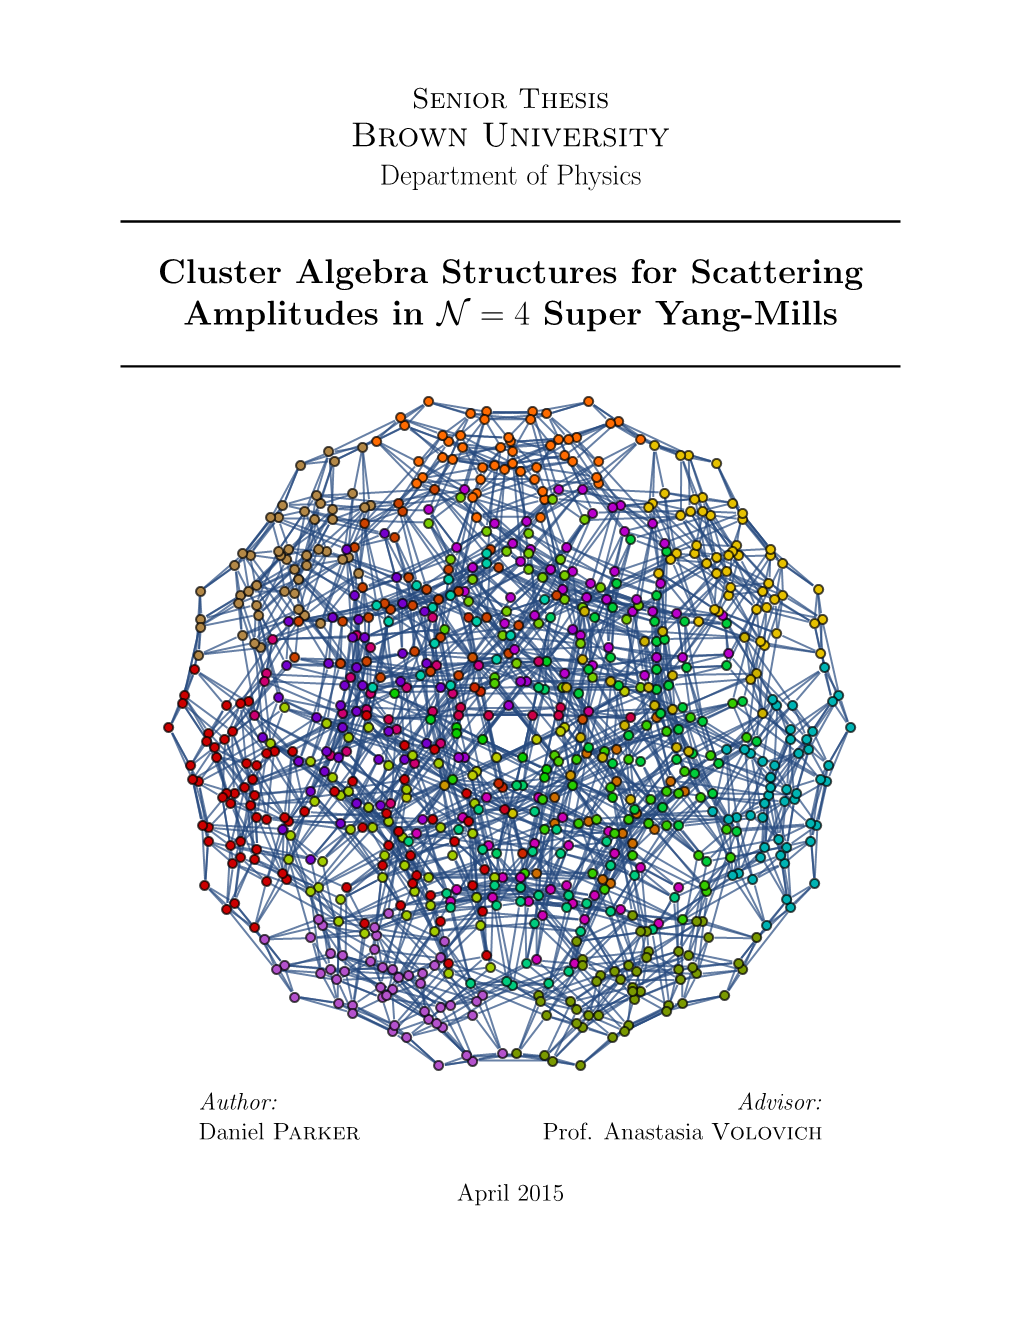 Brown University Cluster Algebra Structures for Scattering Amplitudes